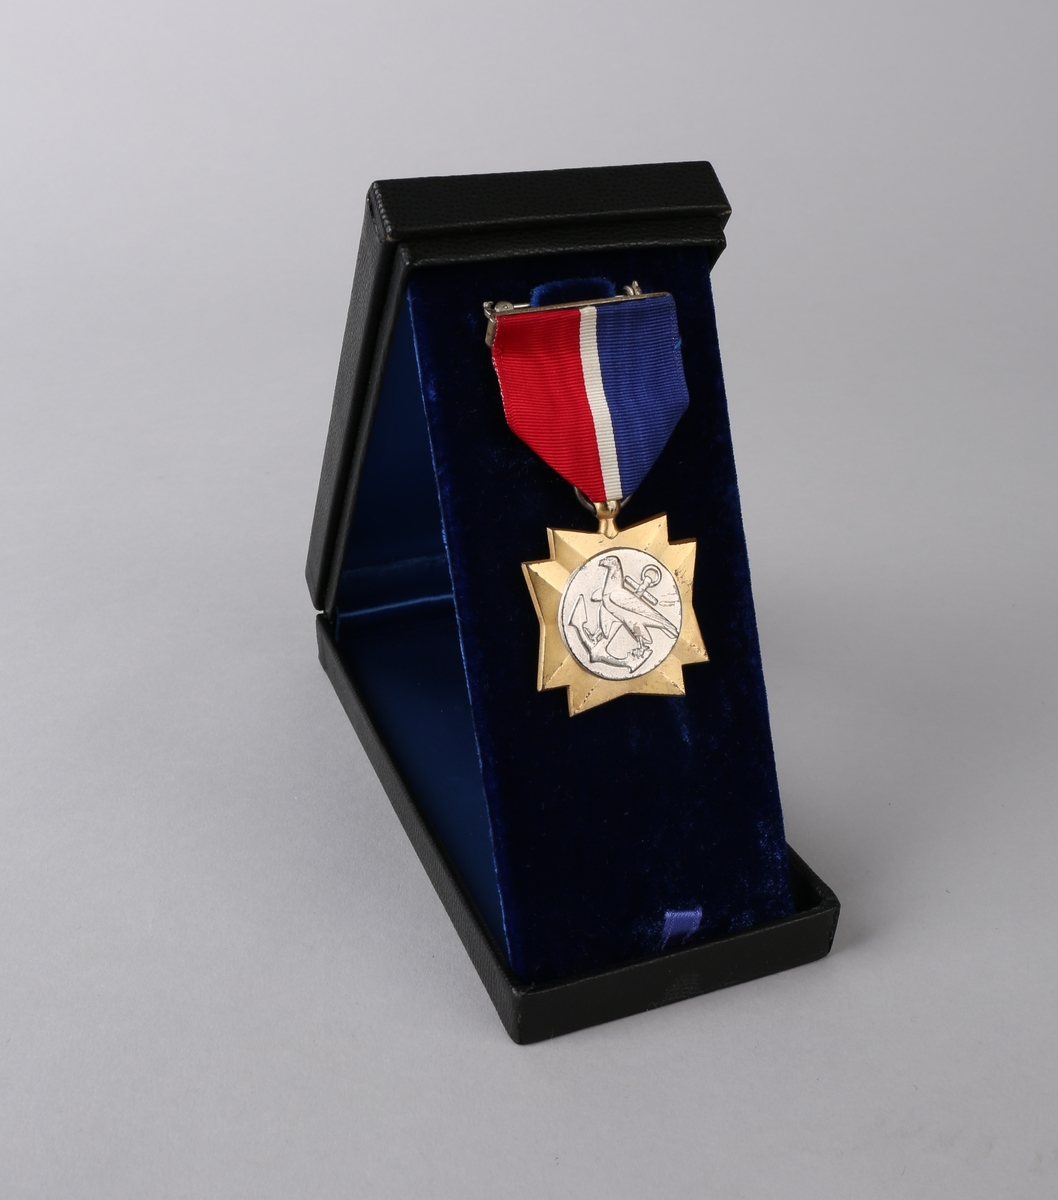 Medaljens forside viser en ørn og et anker. Baksiden har  en fakkel oginskripsjonen "United Statees Merchant Marine"